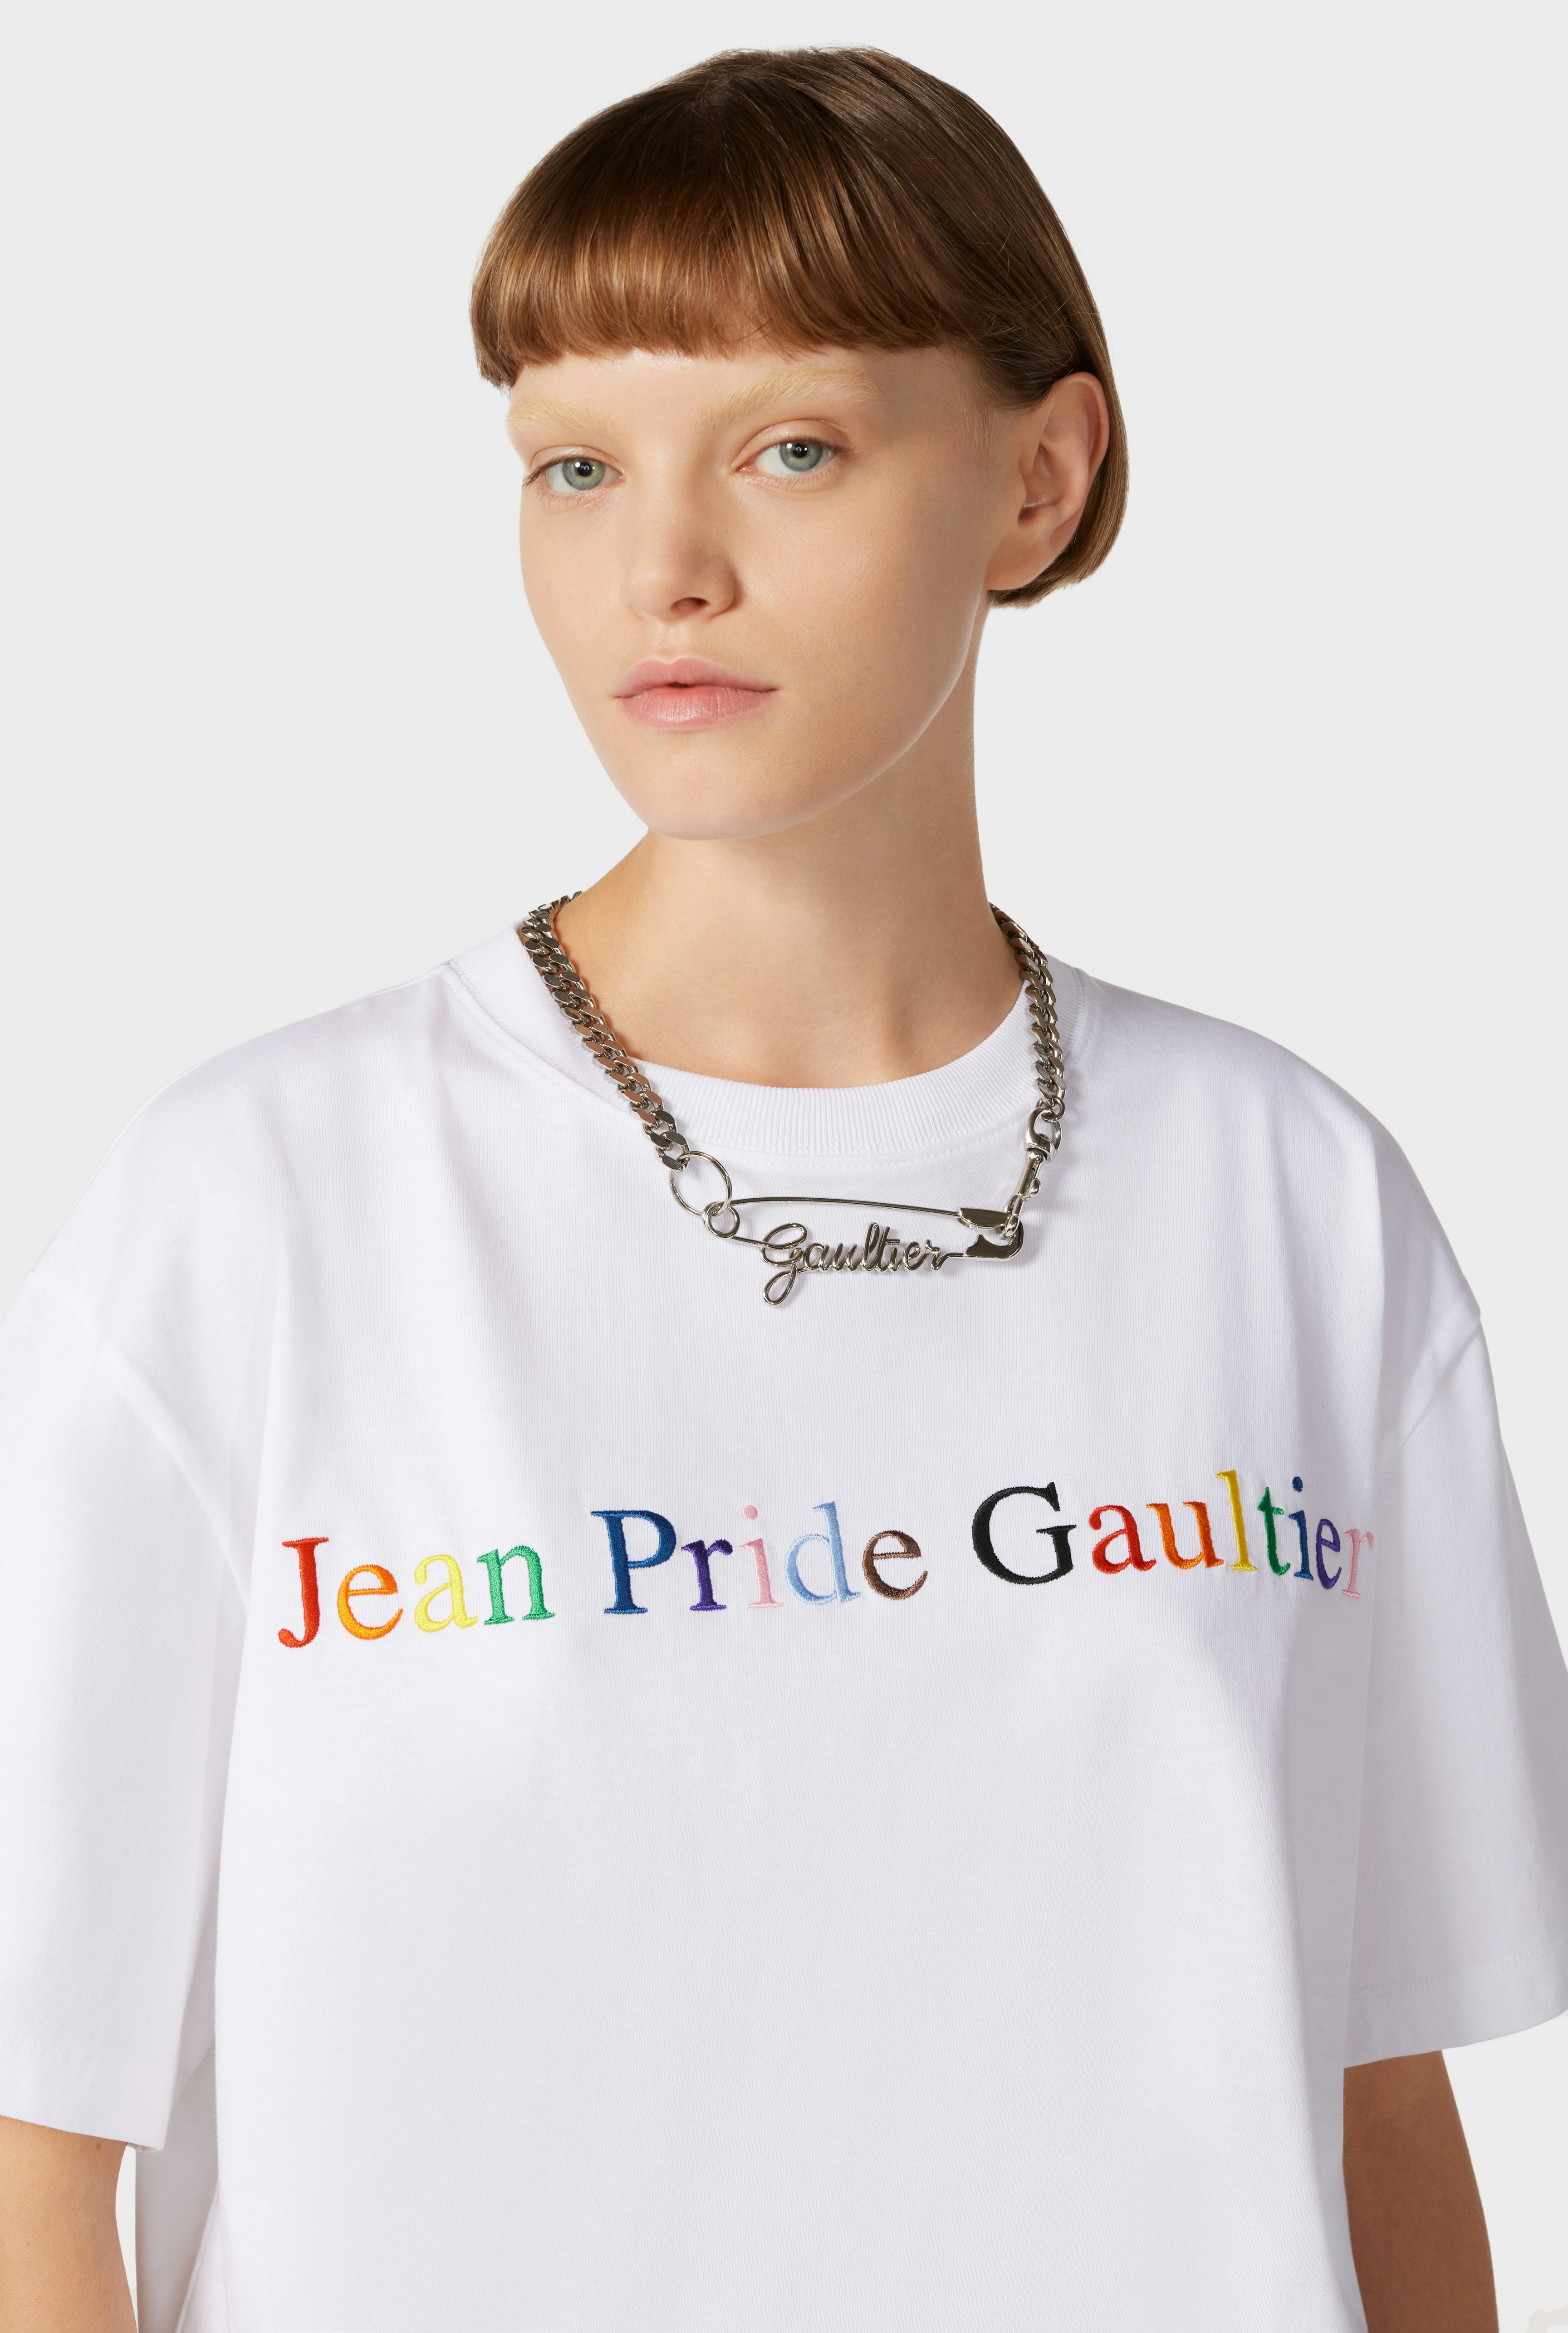 Pride - Le Tshirt Jean Pride Gaultier Jean Paul Gaultier